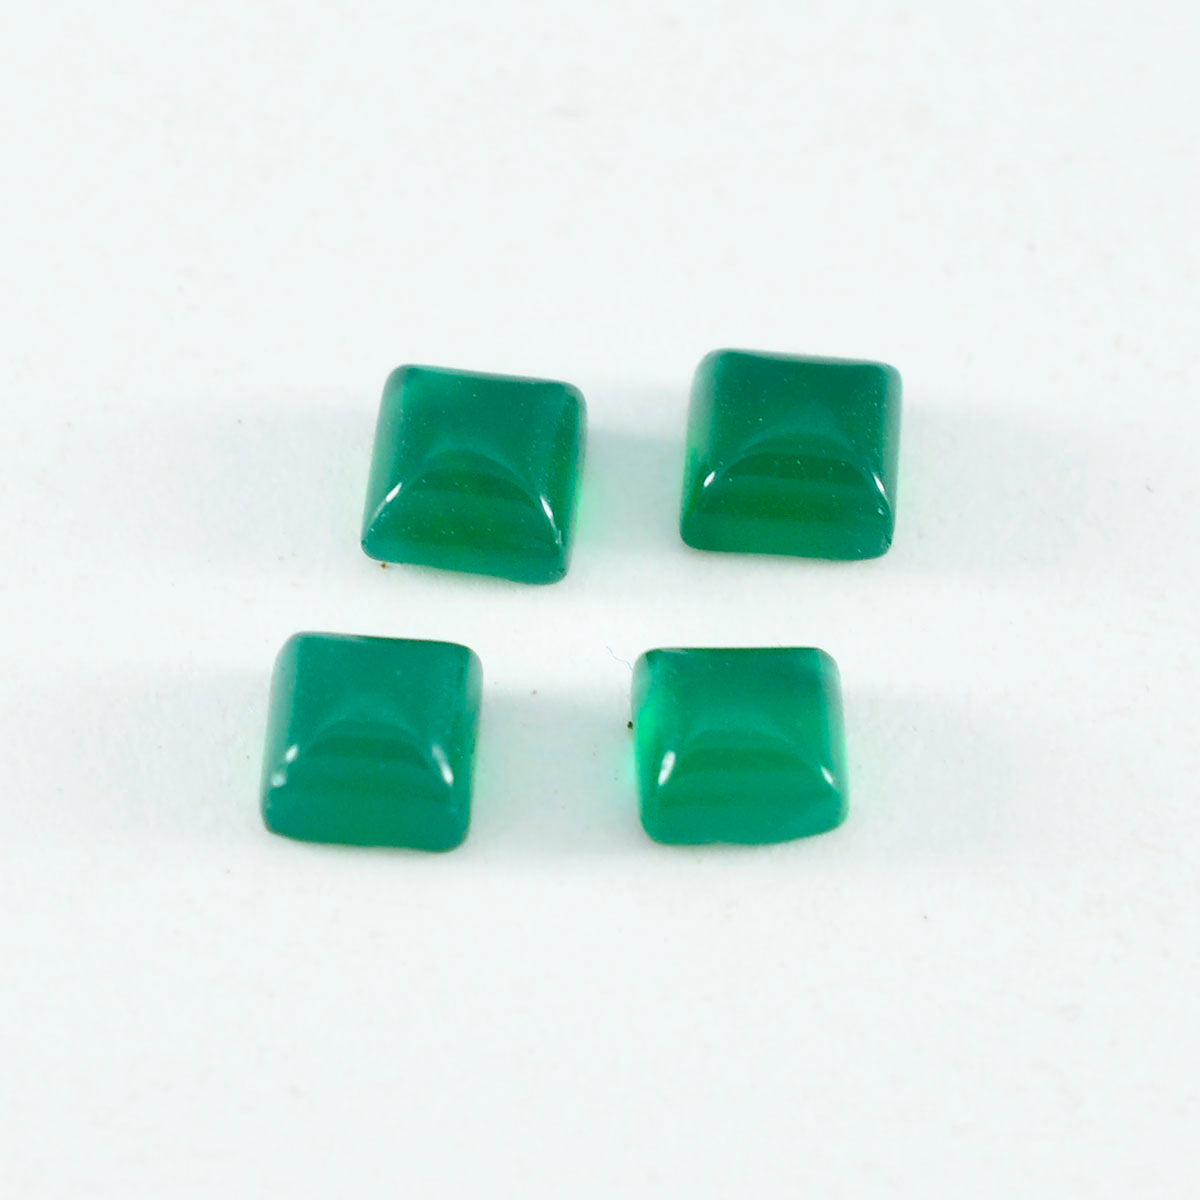 riyogems 1 шт., зеленый оникс, кабошон 6x6 мм, квадратная форма, хорошее качество, свободные драгоценные камни